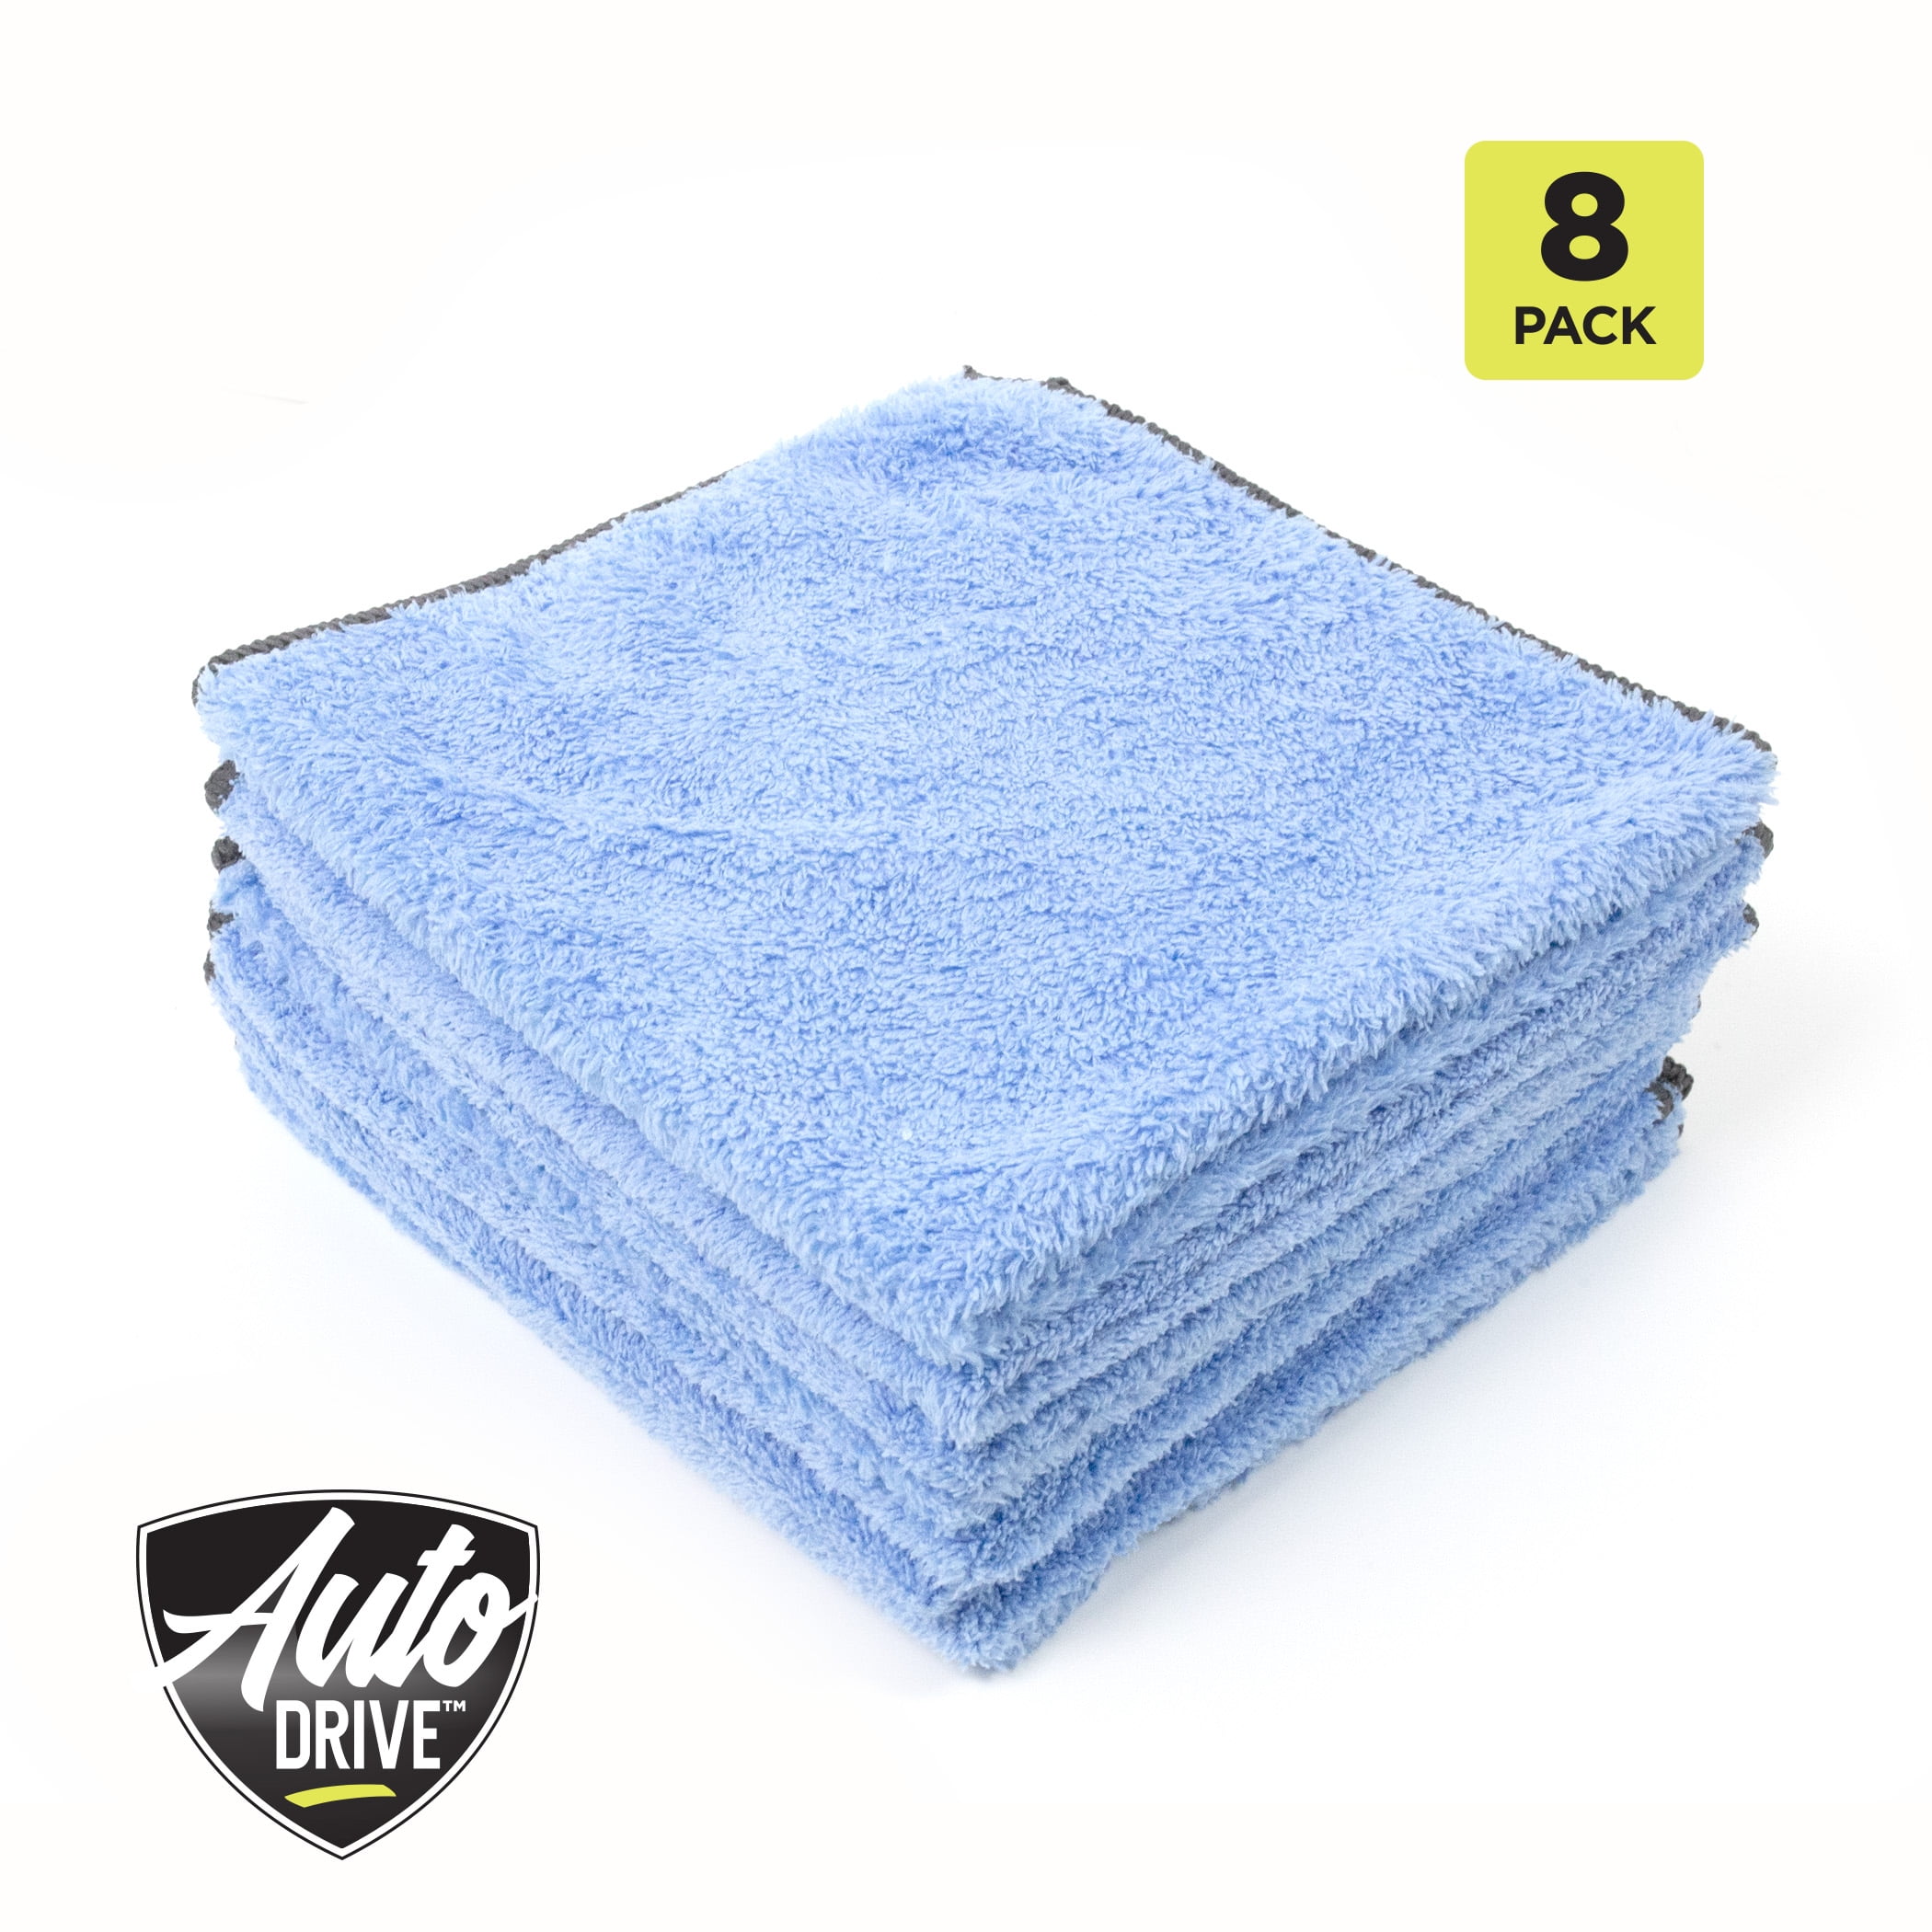 Buy VP Microfiber Drying Towels for Cars - 8pk